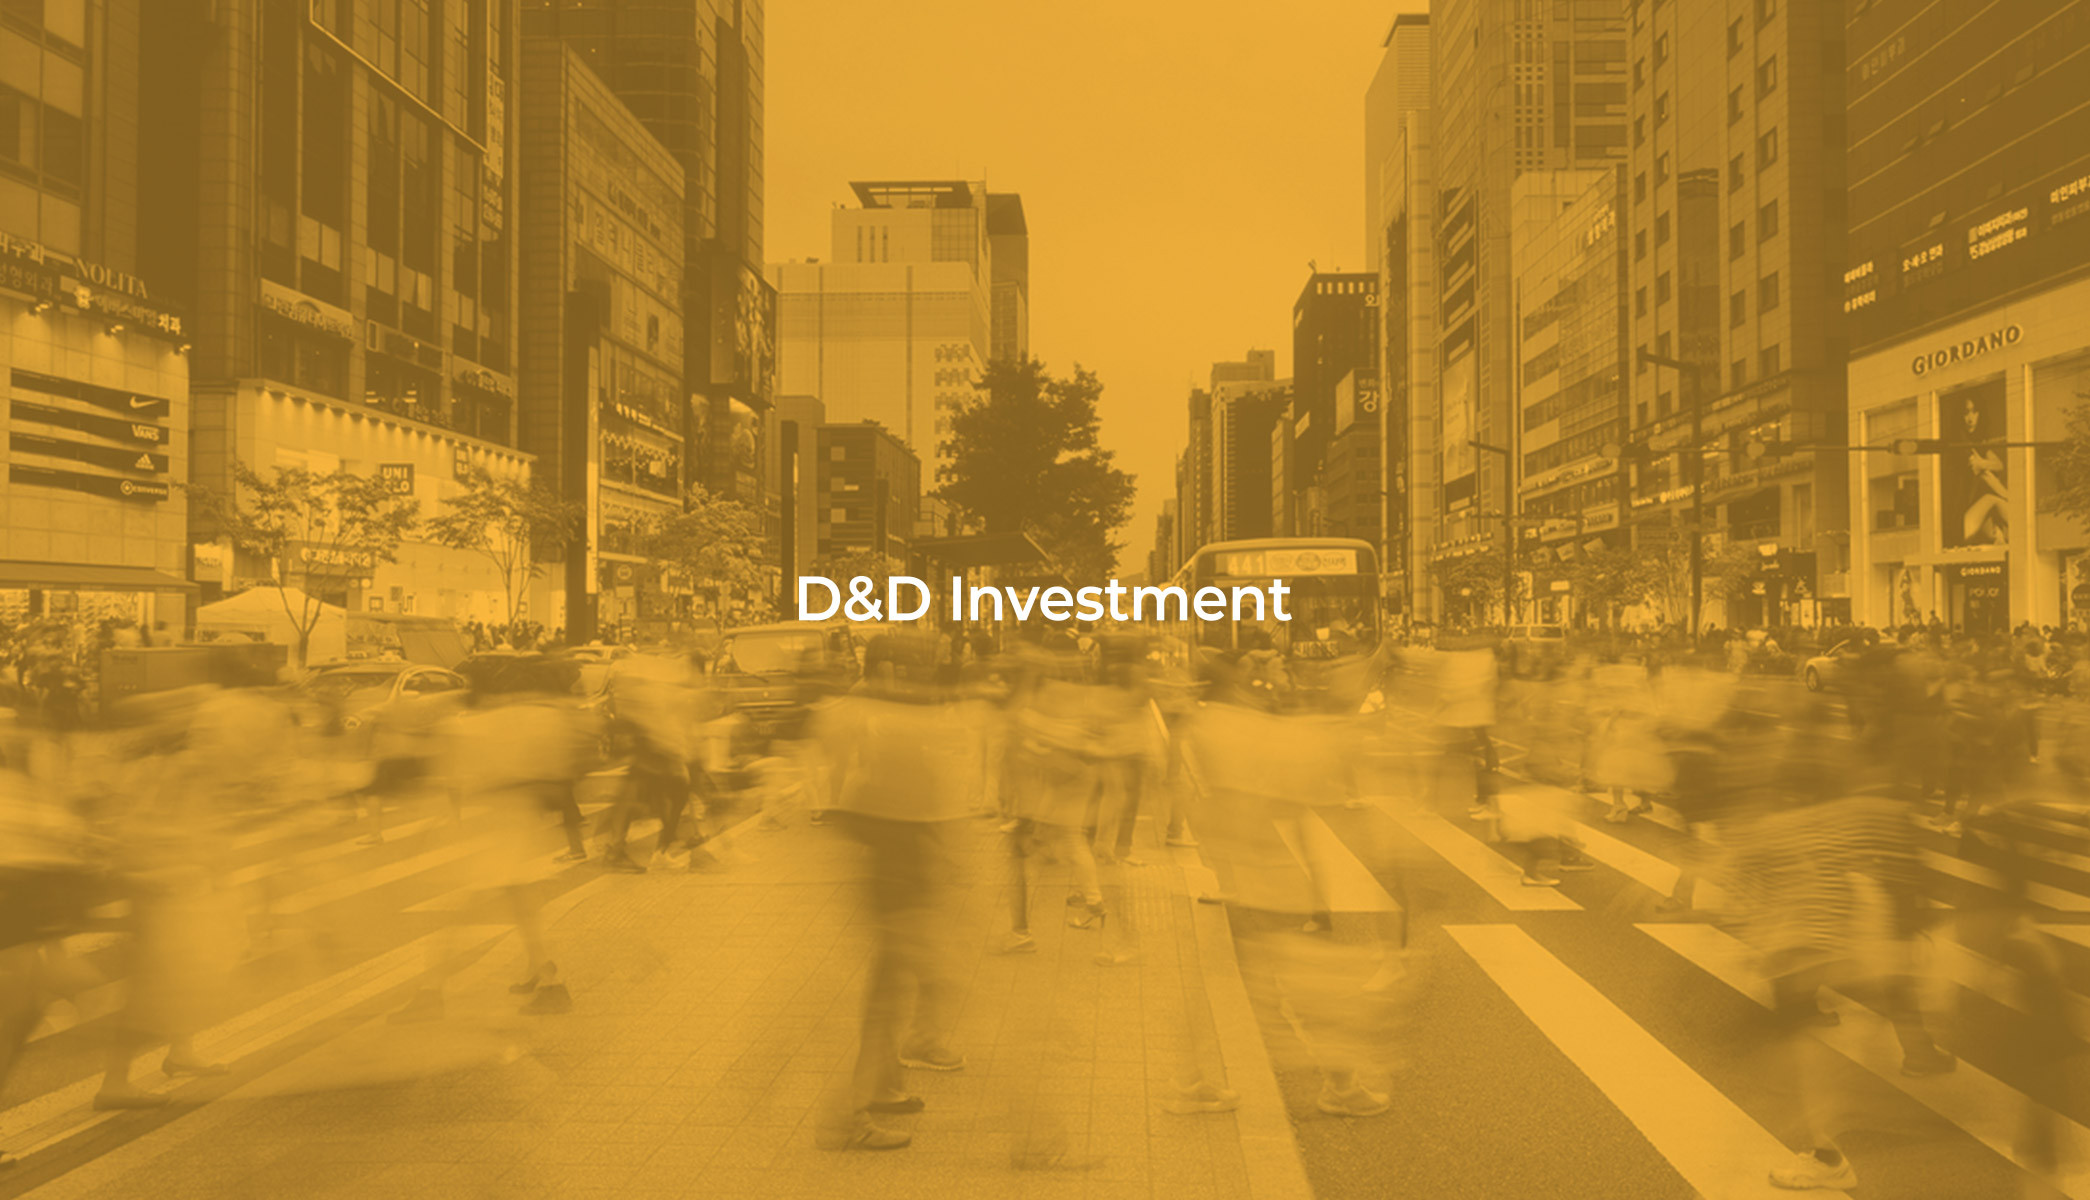 D&D INVESTMENT WEB